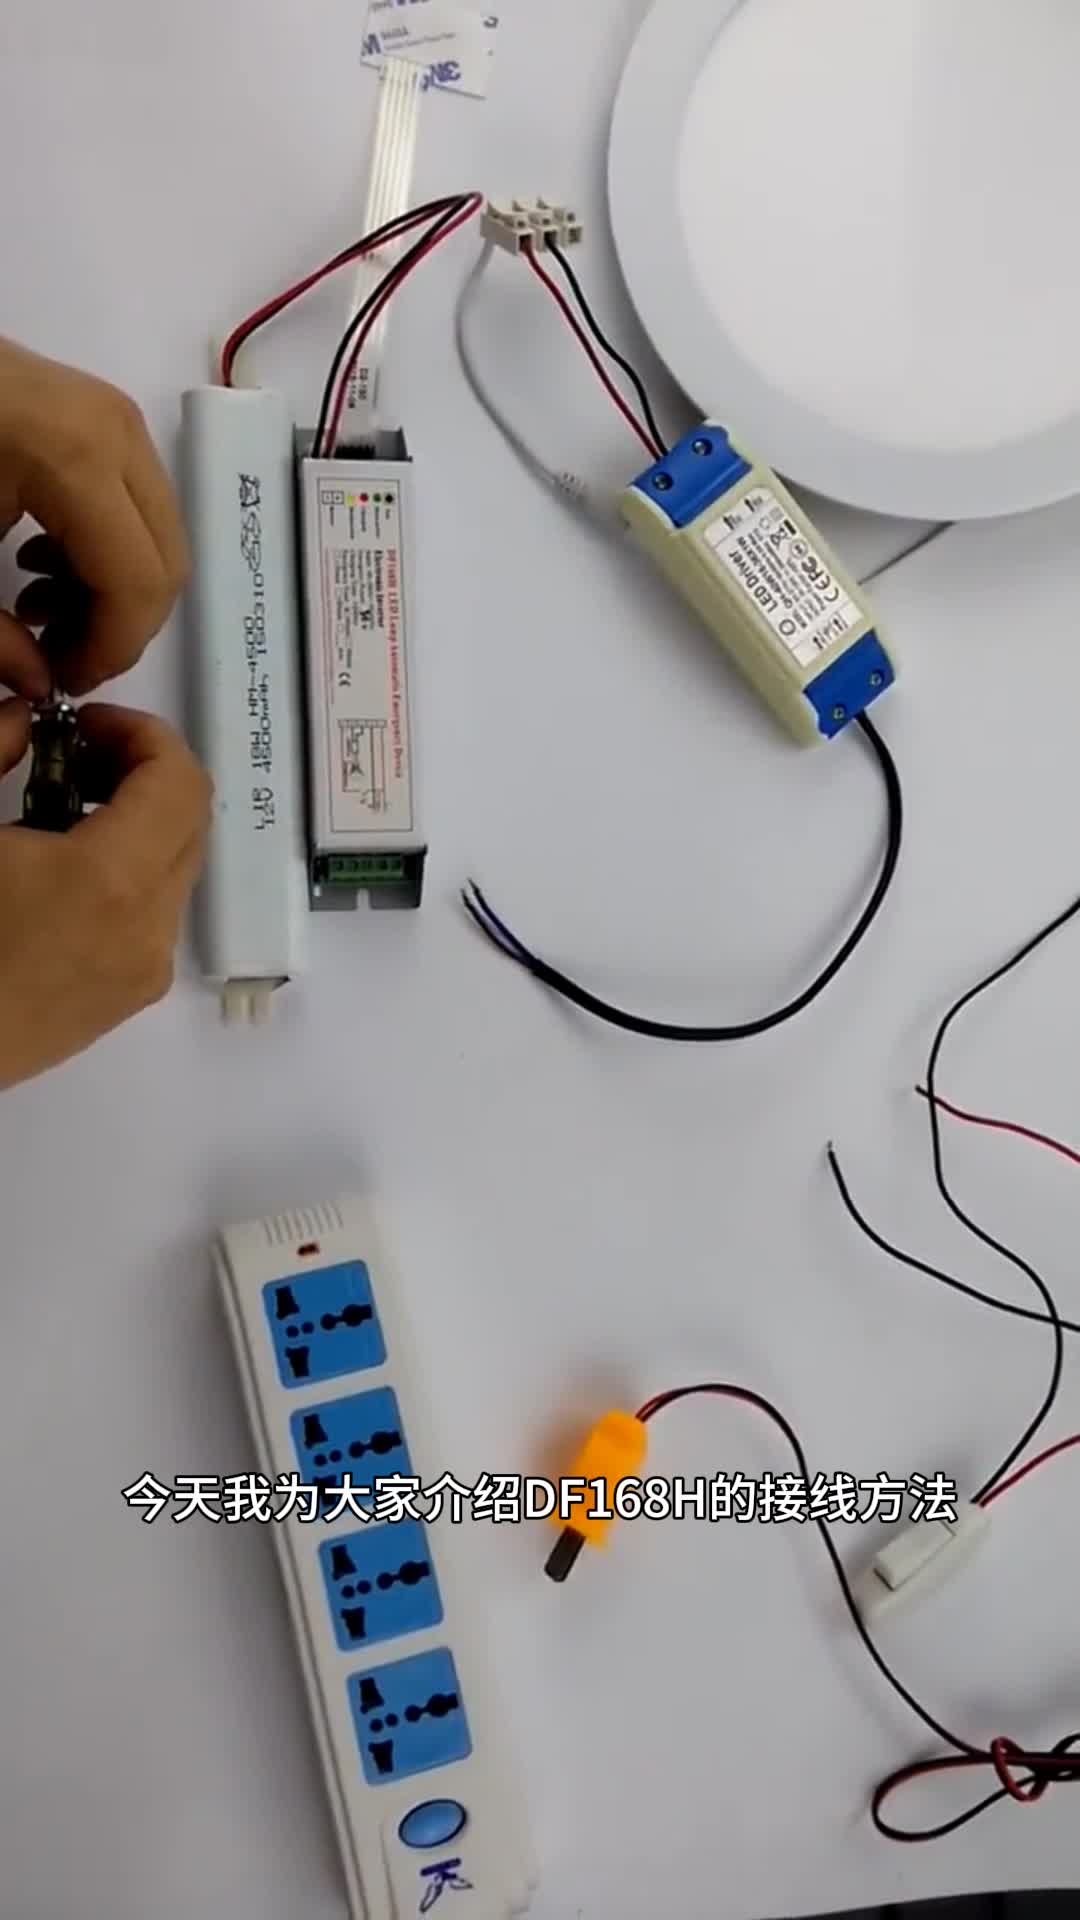 DF168H全功率LED应急驱动接线方法